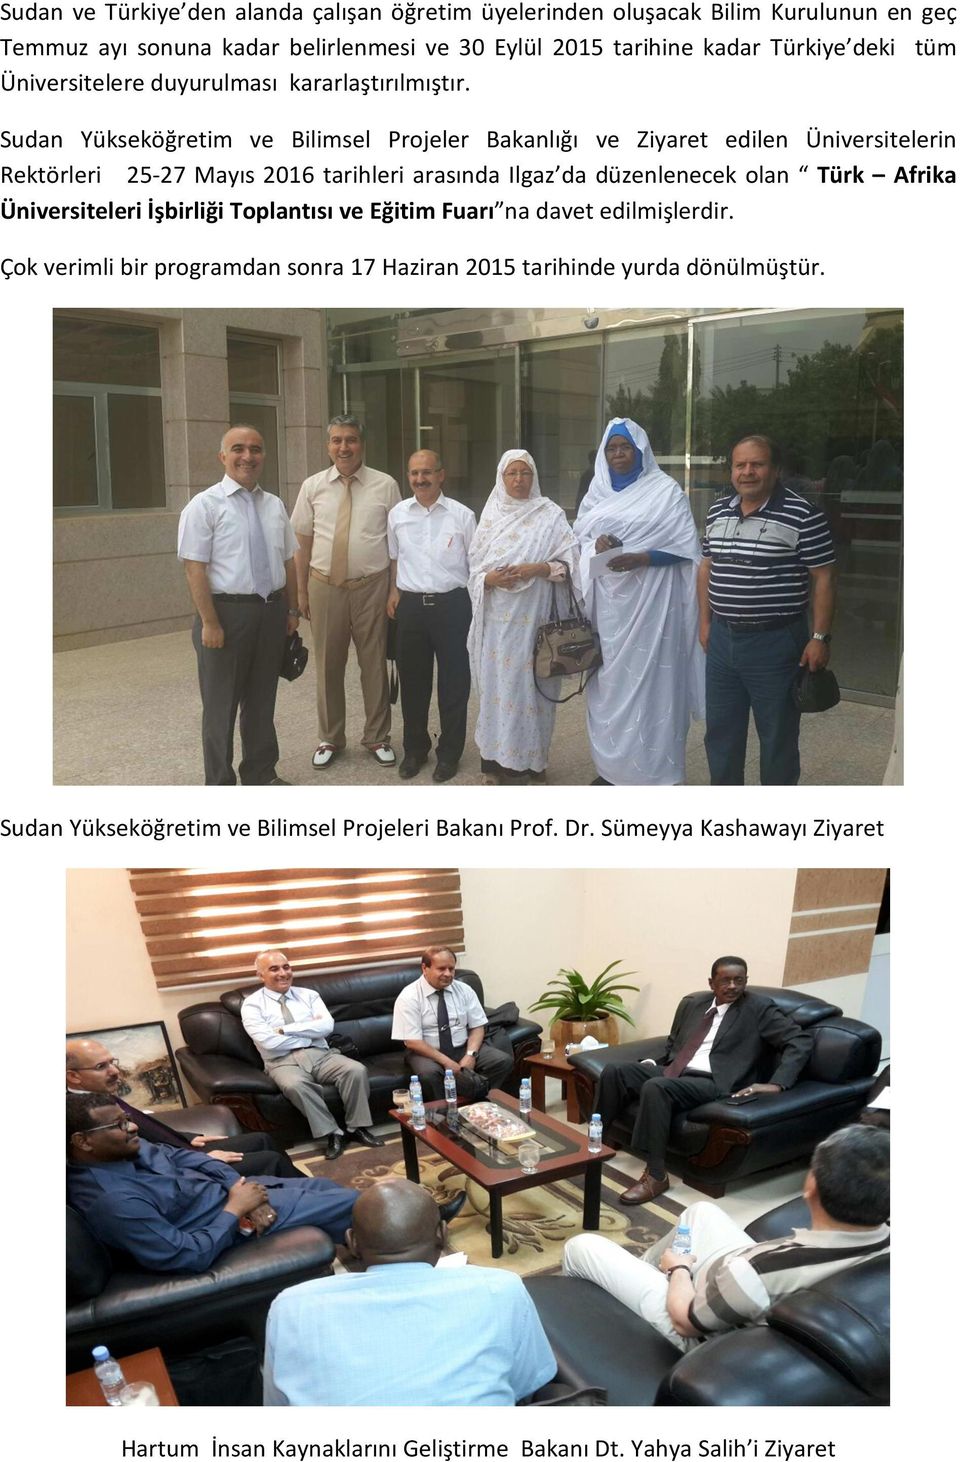 Sudan Yükseköğretim ve Bilimsel Projeler Bakanlığı ve Ziyaret edilen Üniversitelerin Rektörleri 25-27 Mayıs 2016 tarihleri arasında Ilgaz da düzenlenecek olan Türk Afrika